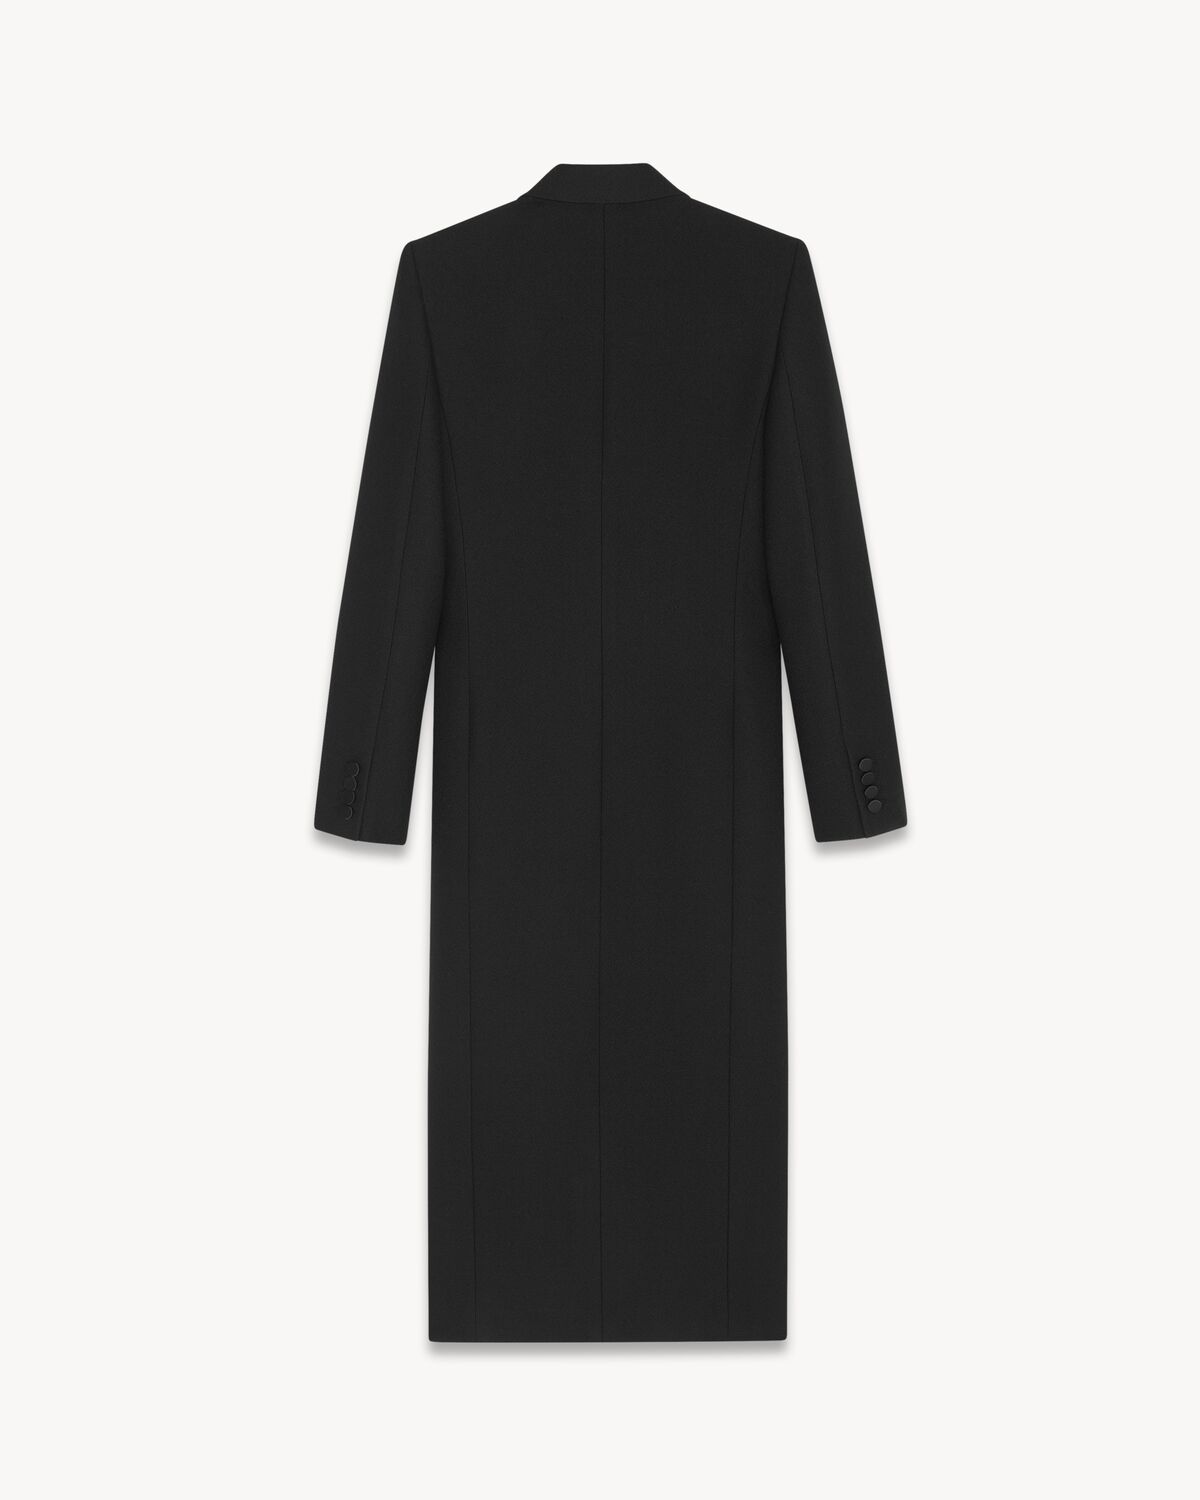 tuxedo coat in crepe wool